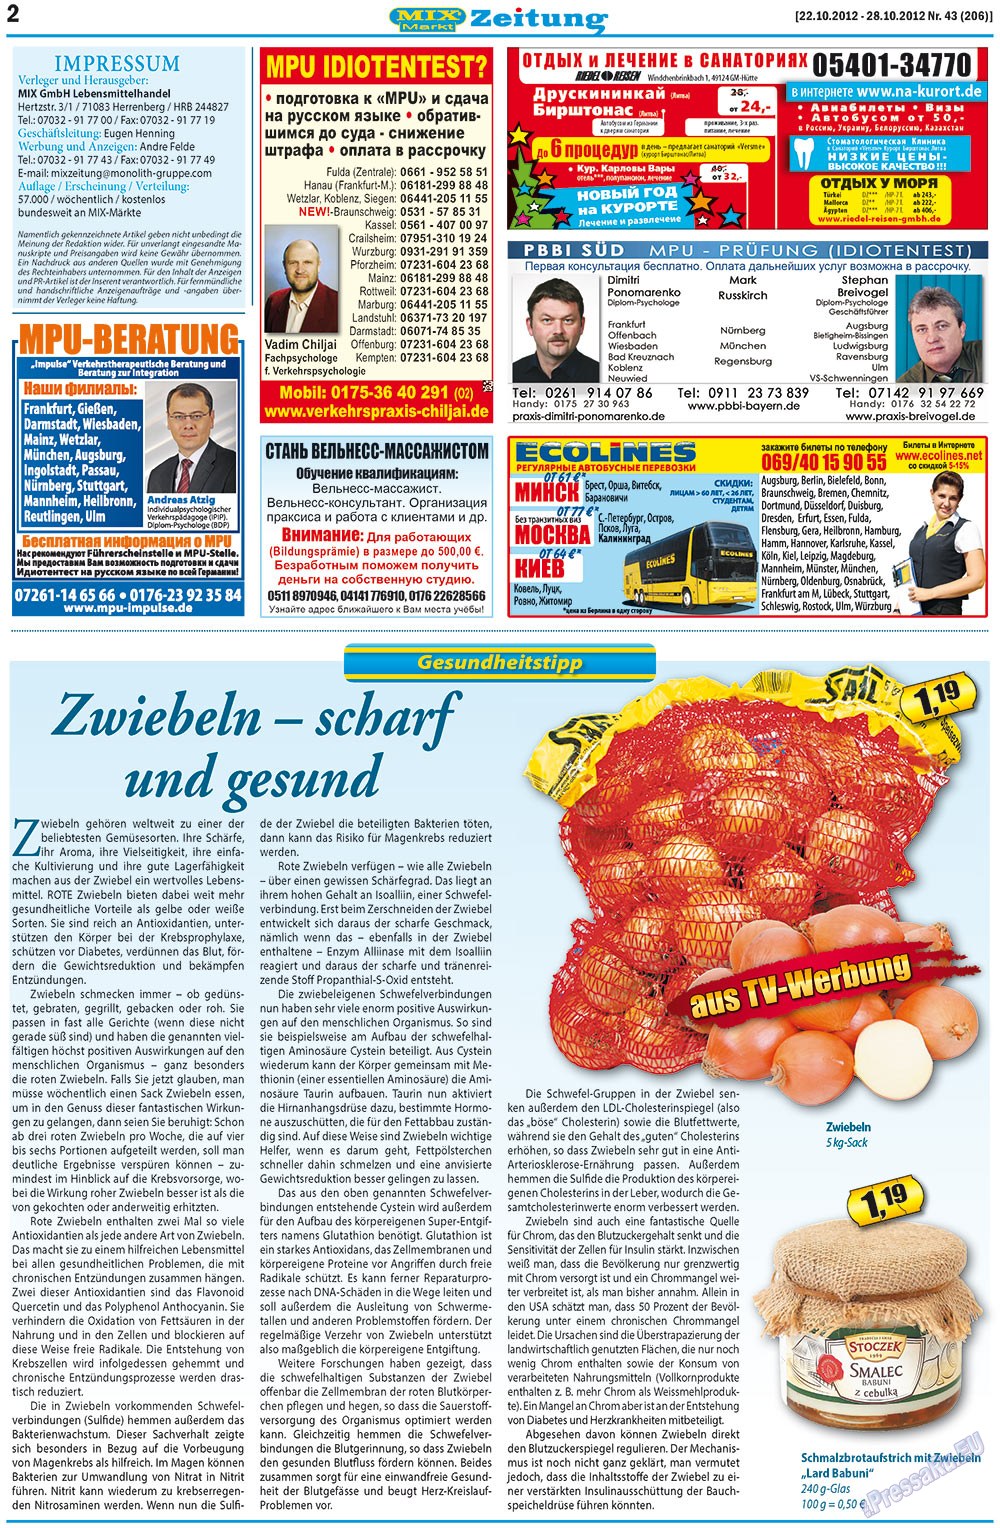 MIX-Markt Zeitung (Zeitung). 2012 Jahr, Ausgabe 43, Seite 2